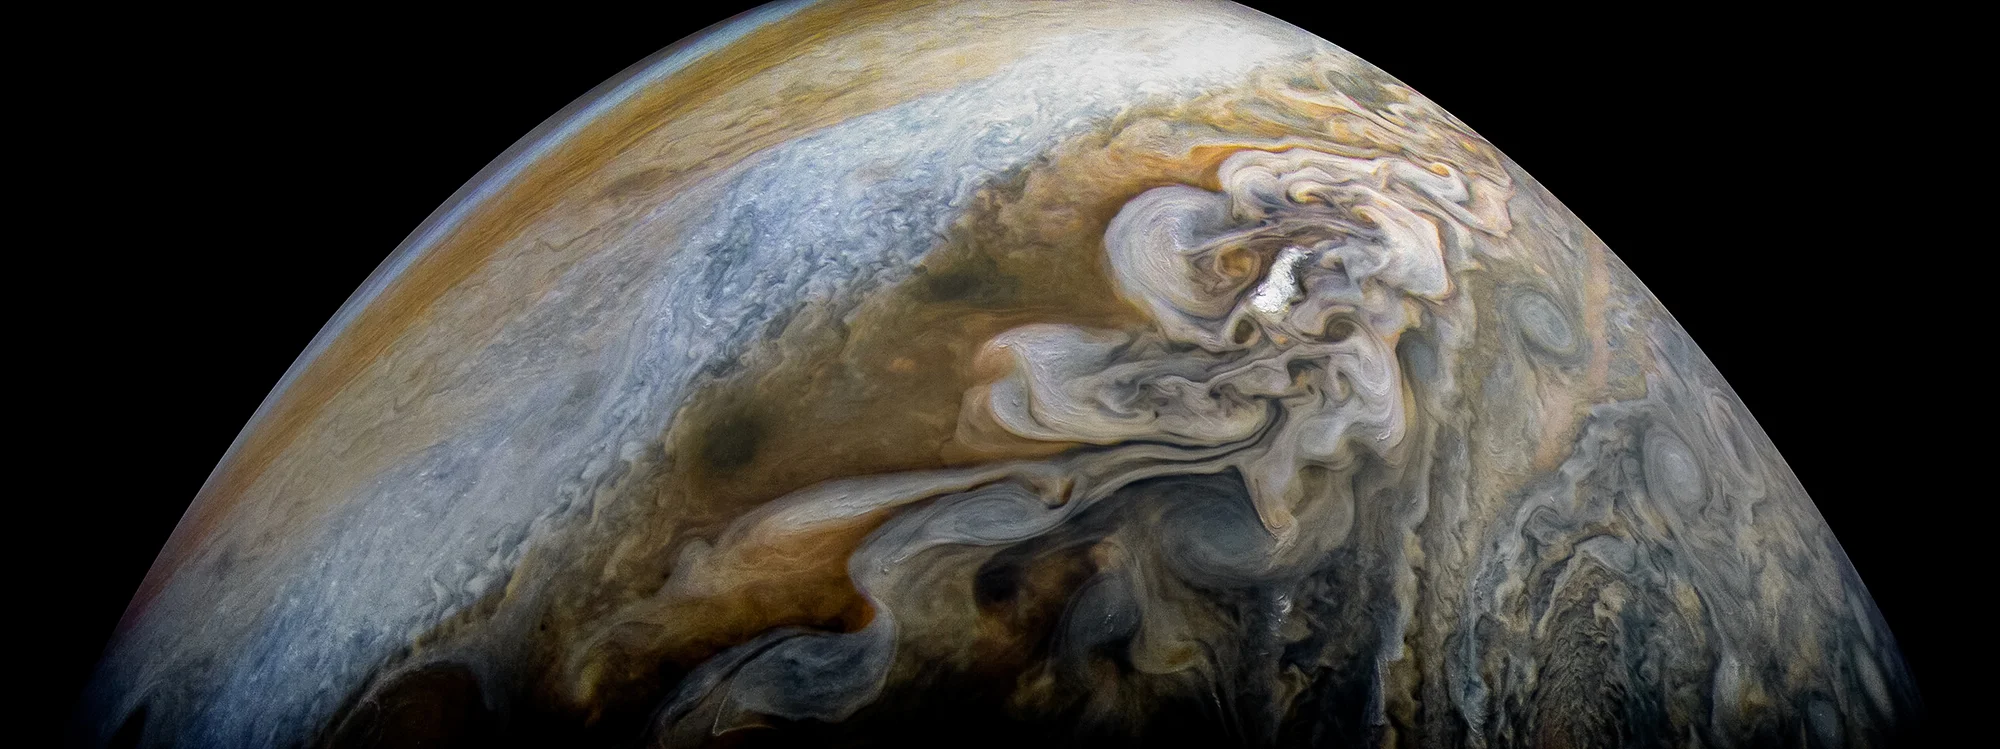 NASA показало удивительный снимок облаков на Юпитере, и теперь все мечтают о космосе - фото 370203